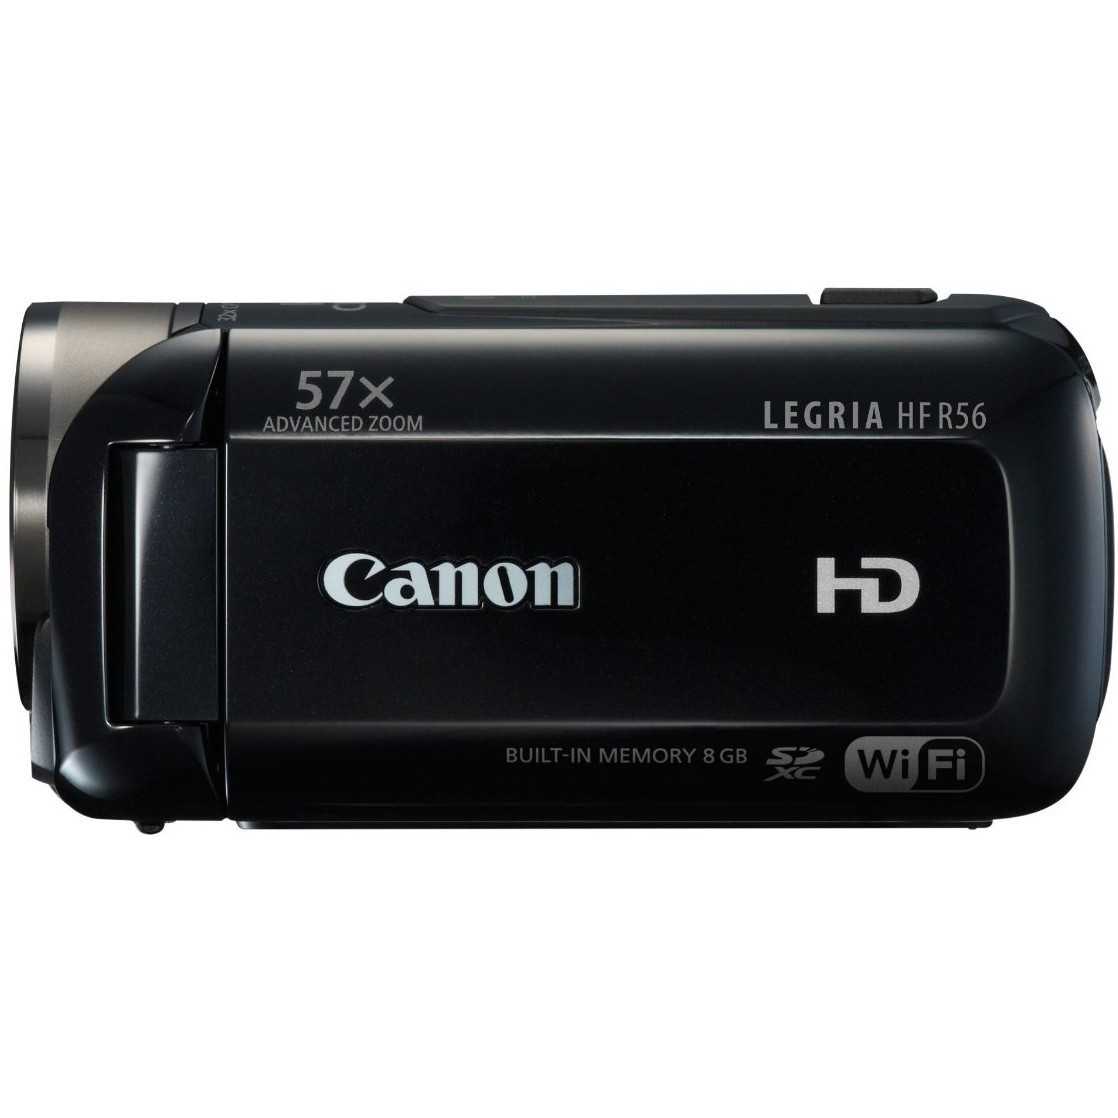 Canon legria mini купить по акционной цене , отзывы и обзоры.